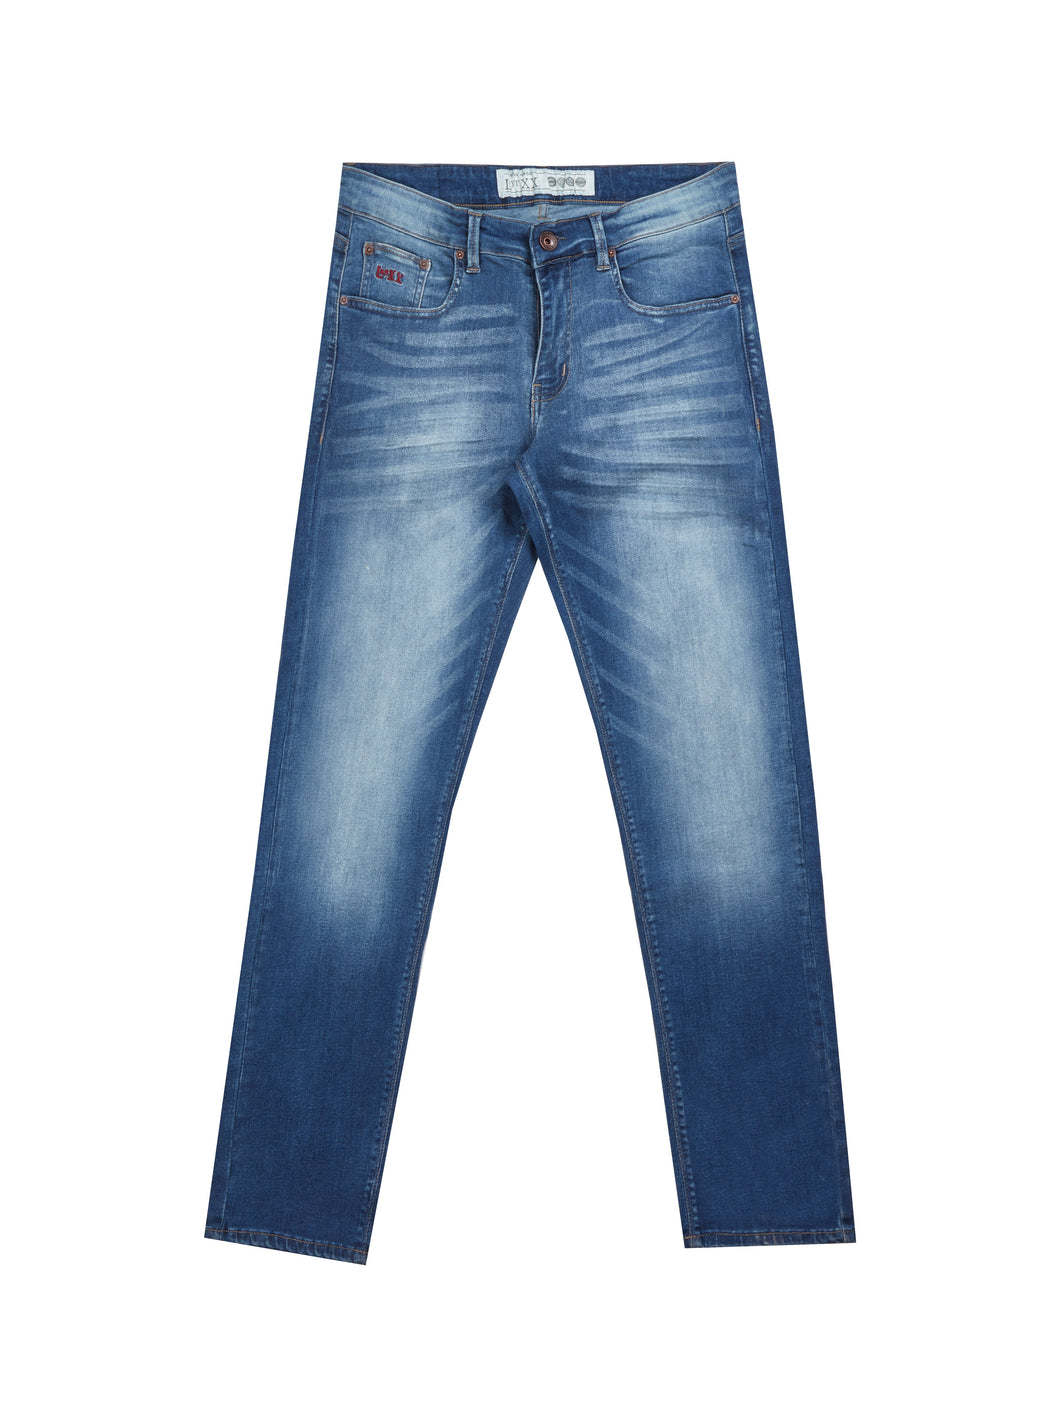 LotXX Ocean Blue Jeans | Mish Mash